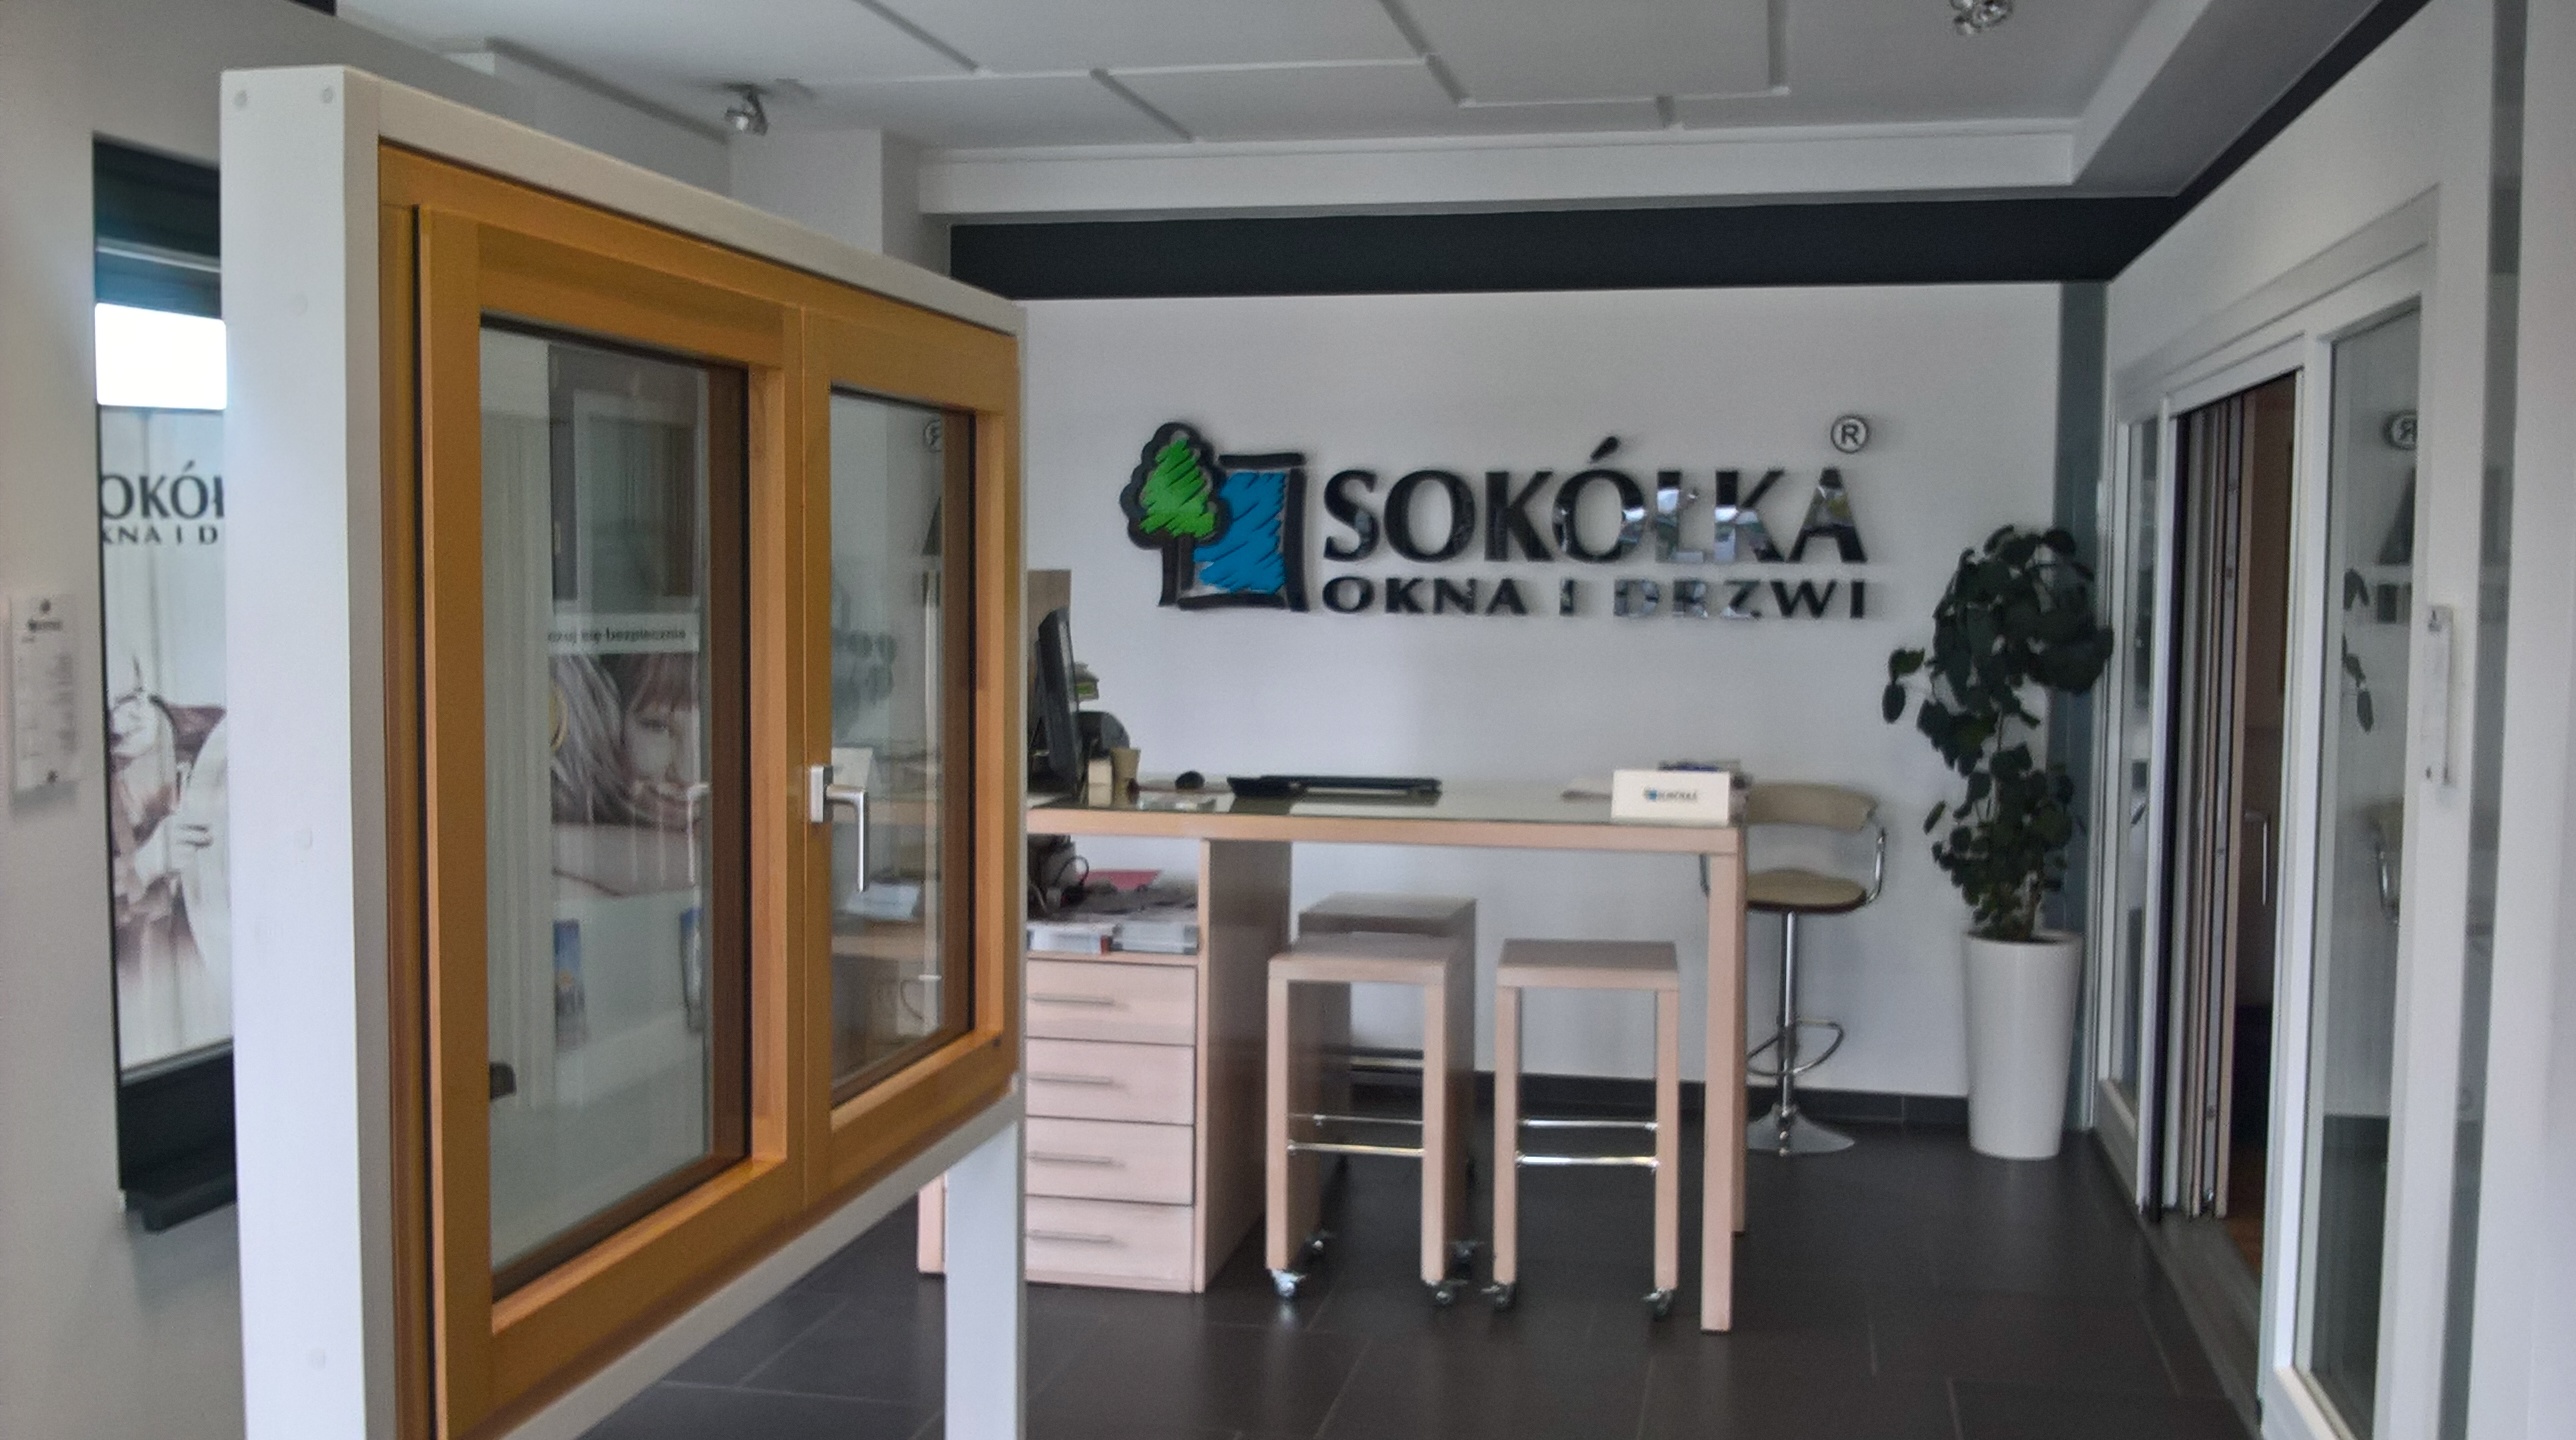 Okna Drewniane Sokolka Salon Sprzedazy Sokolka Okna I Drzwi